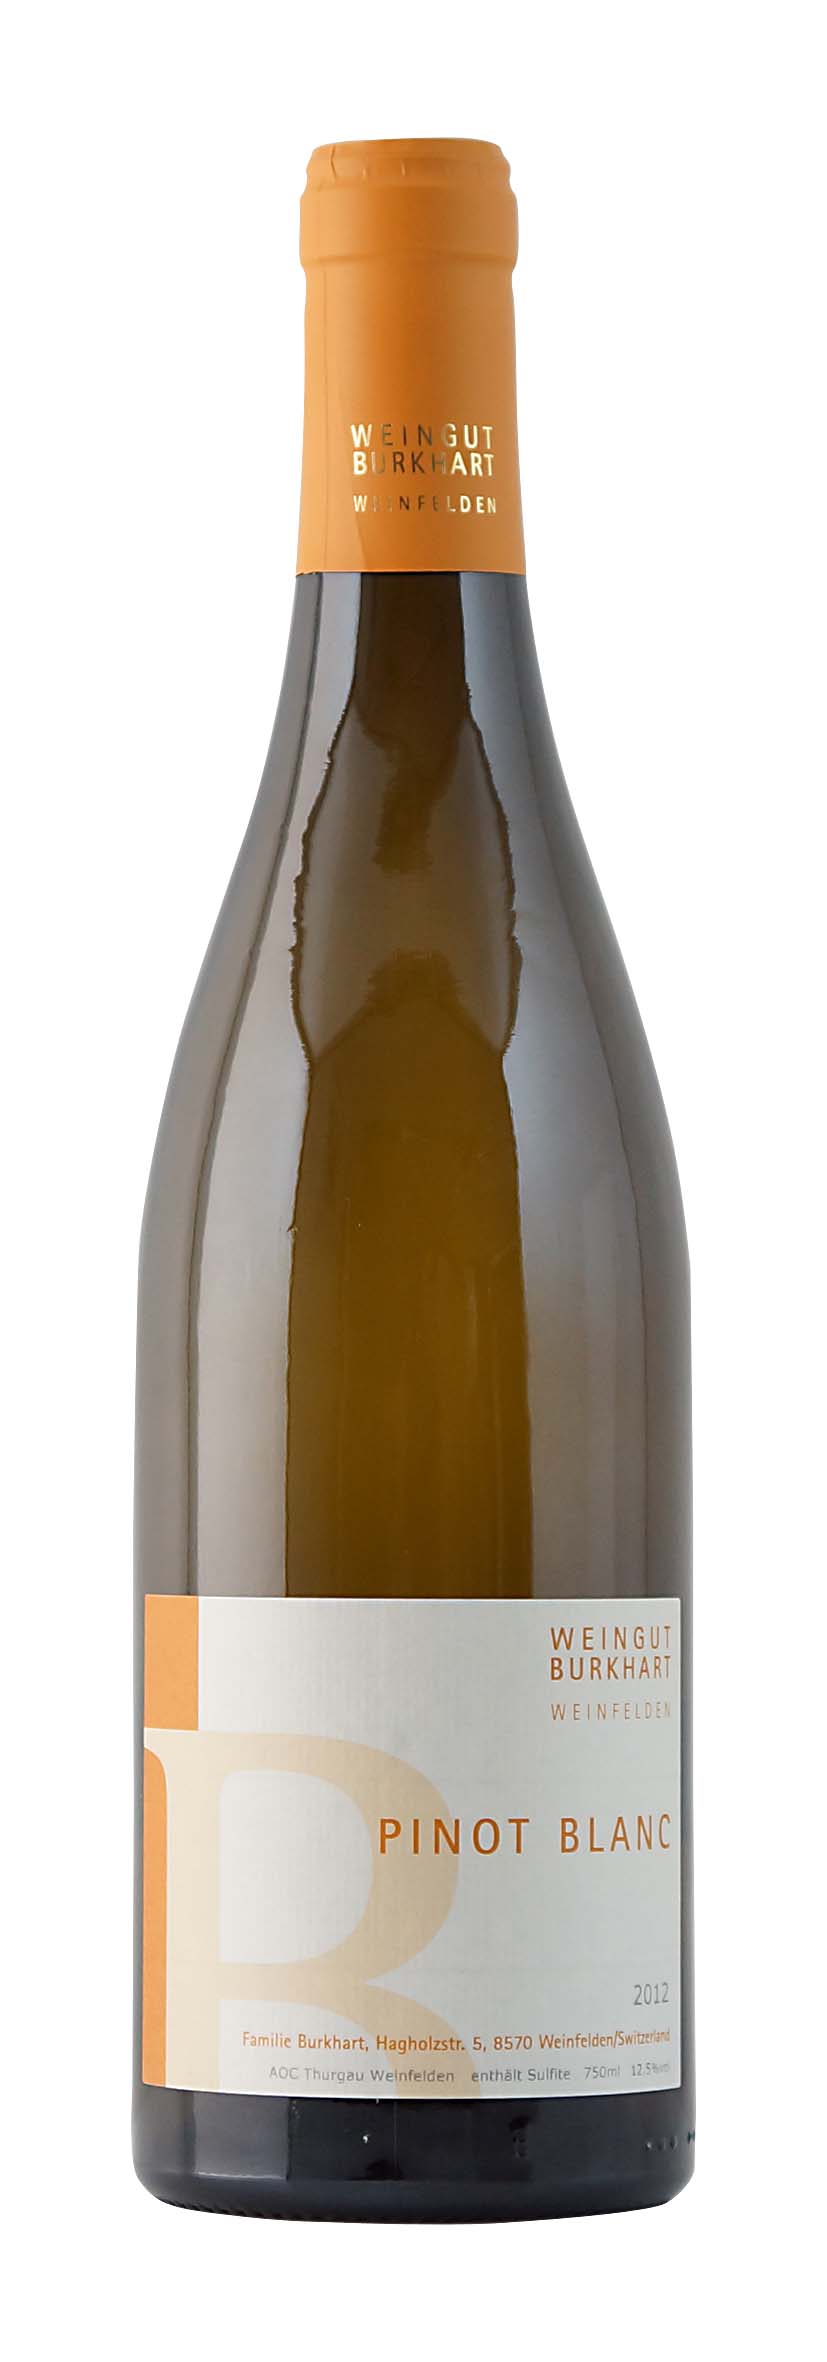 Thurgau AOC Pinot Blanc 2012